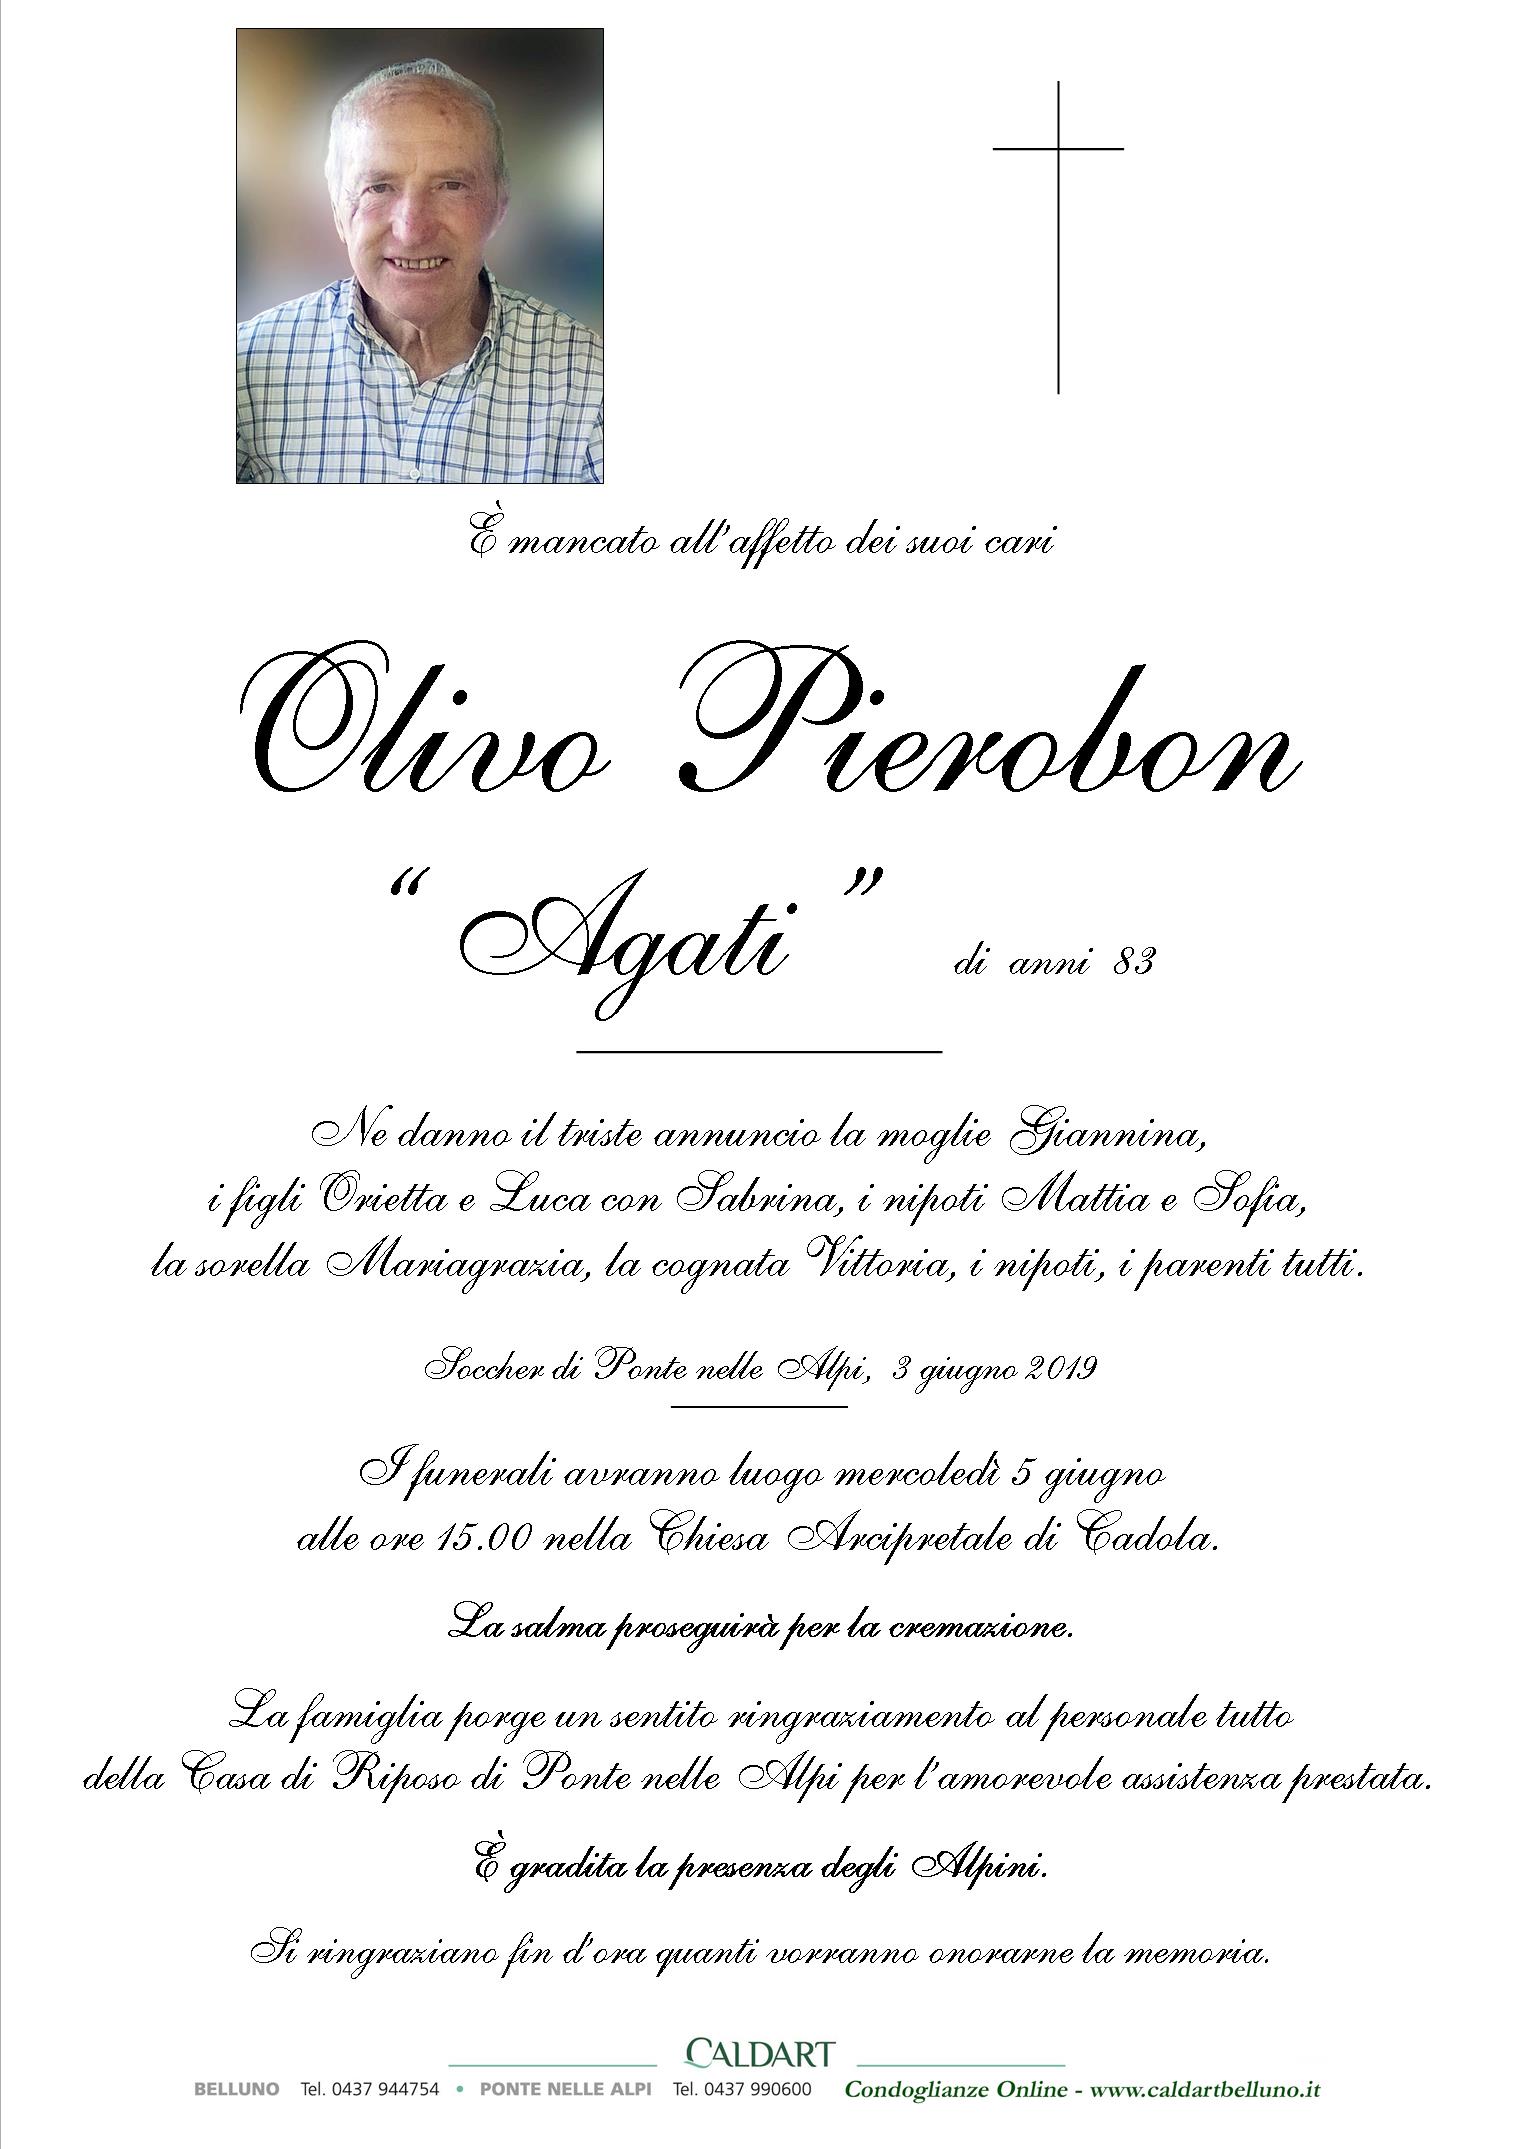 Pierobon Olivo